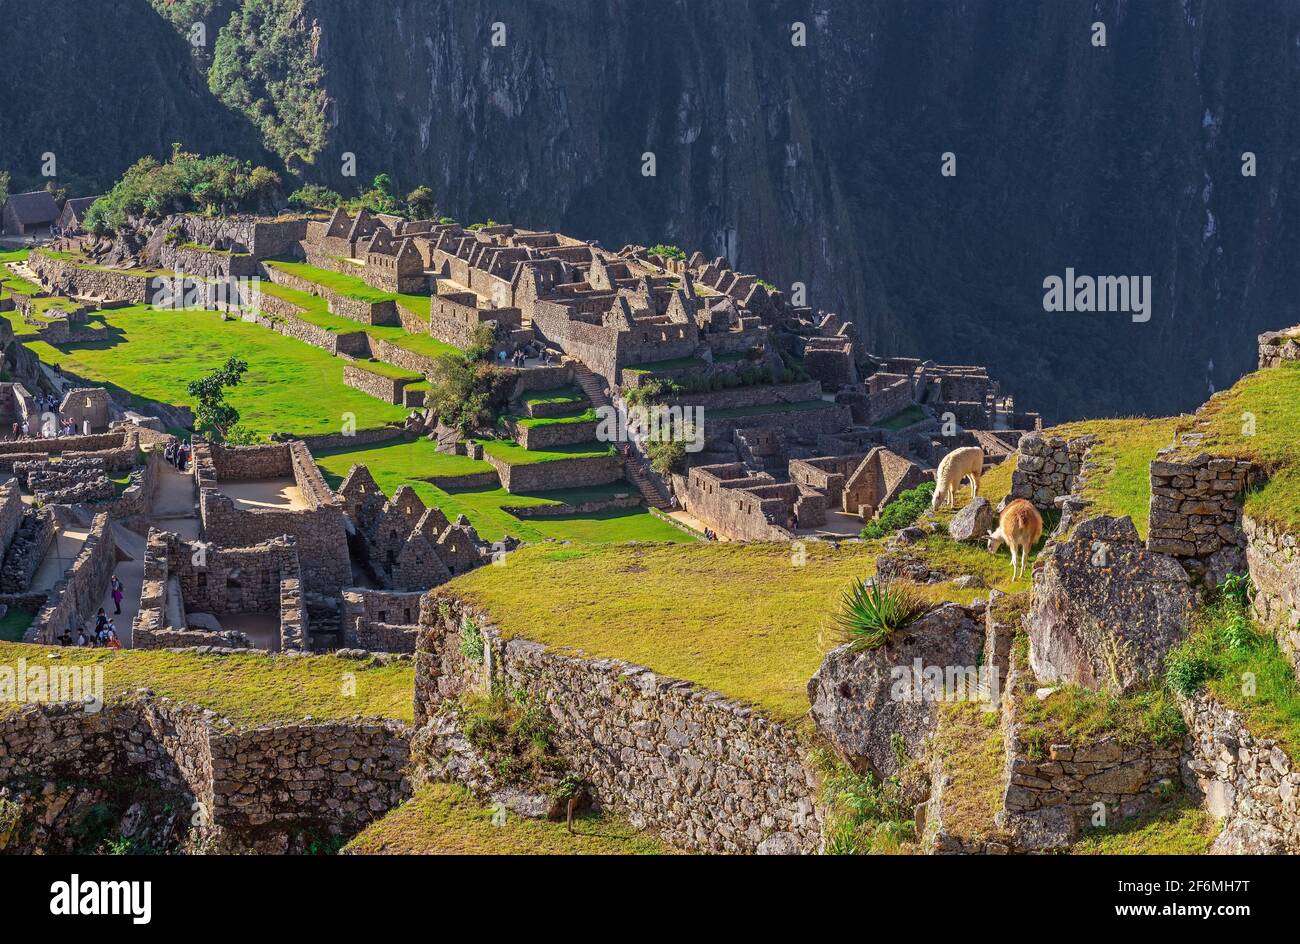 Zwei Lamas (Lama glama) fressen Gras auf den Landwirtschaftsterrassen von Machu Picchu, Cusco, Peru. Stockfoto